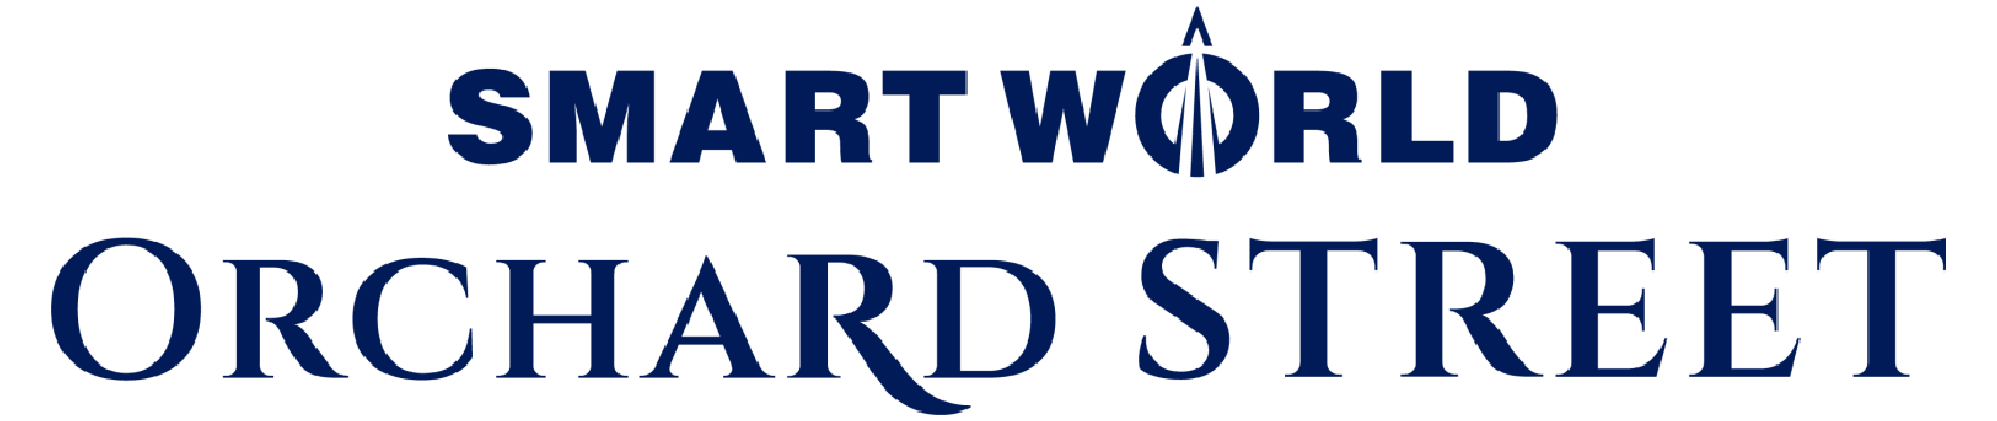 Smart world developers logo